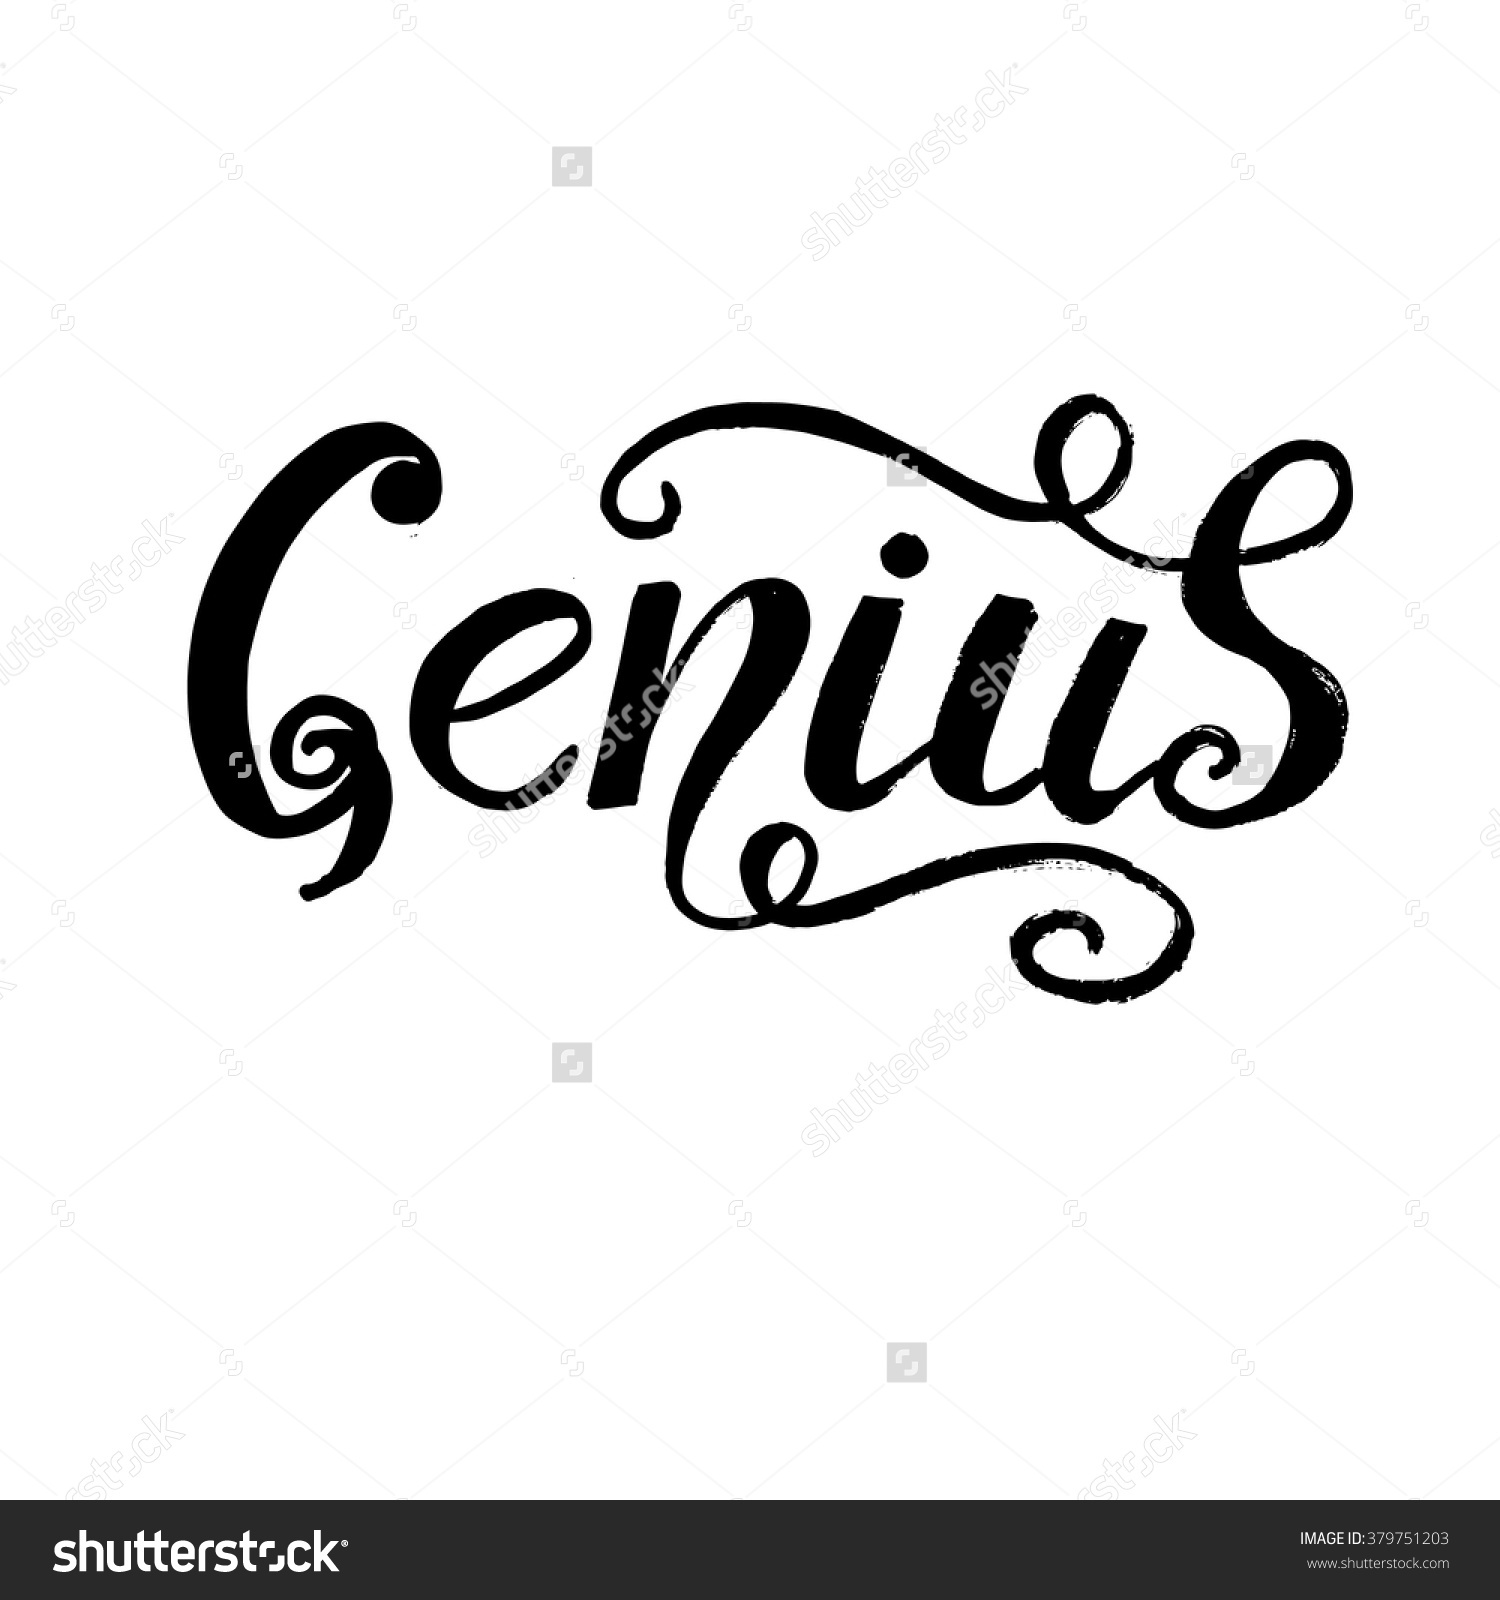 Images of Genius | 1500x1600